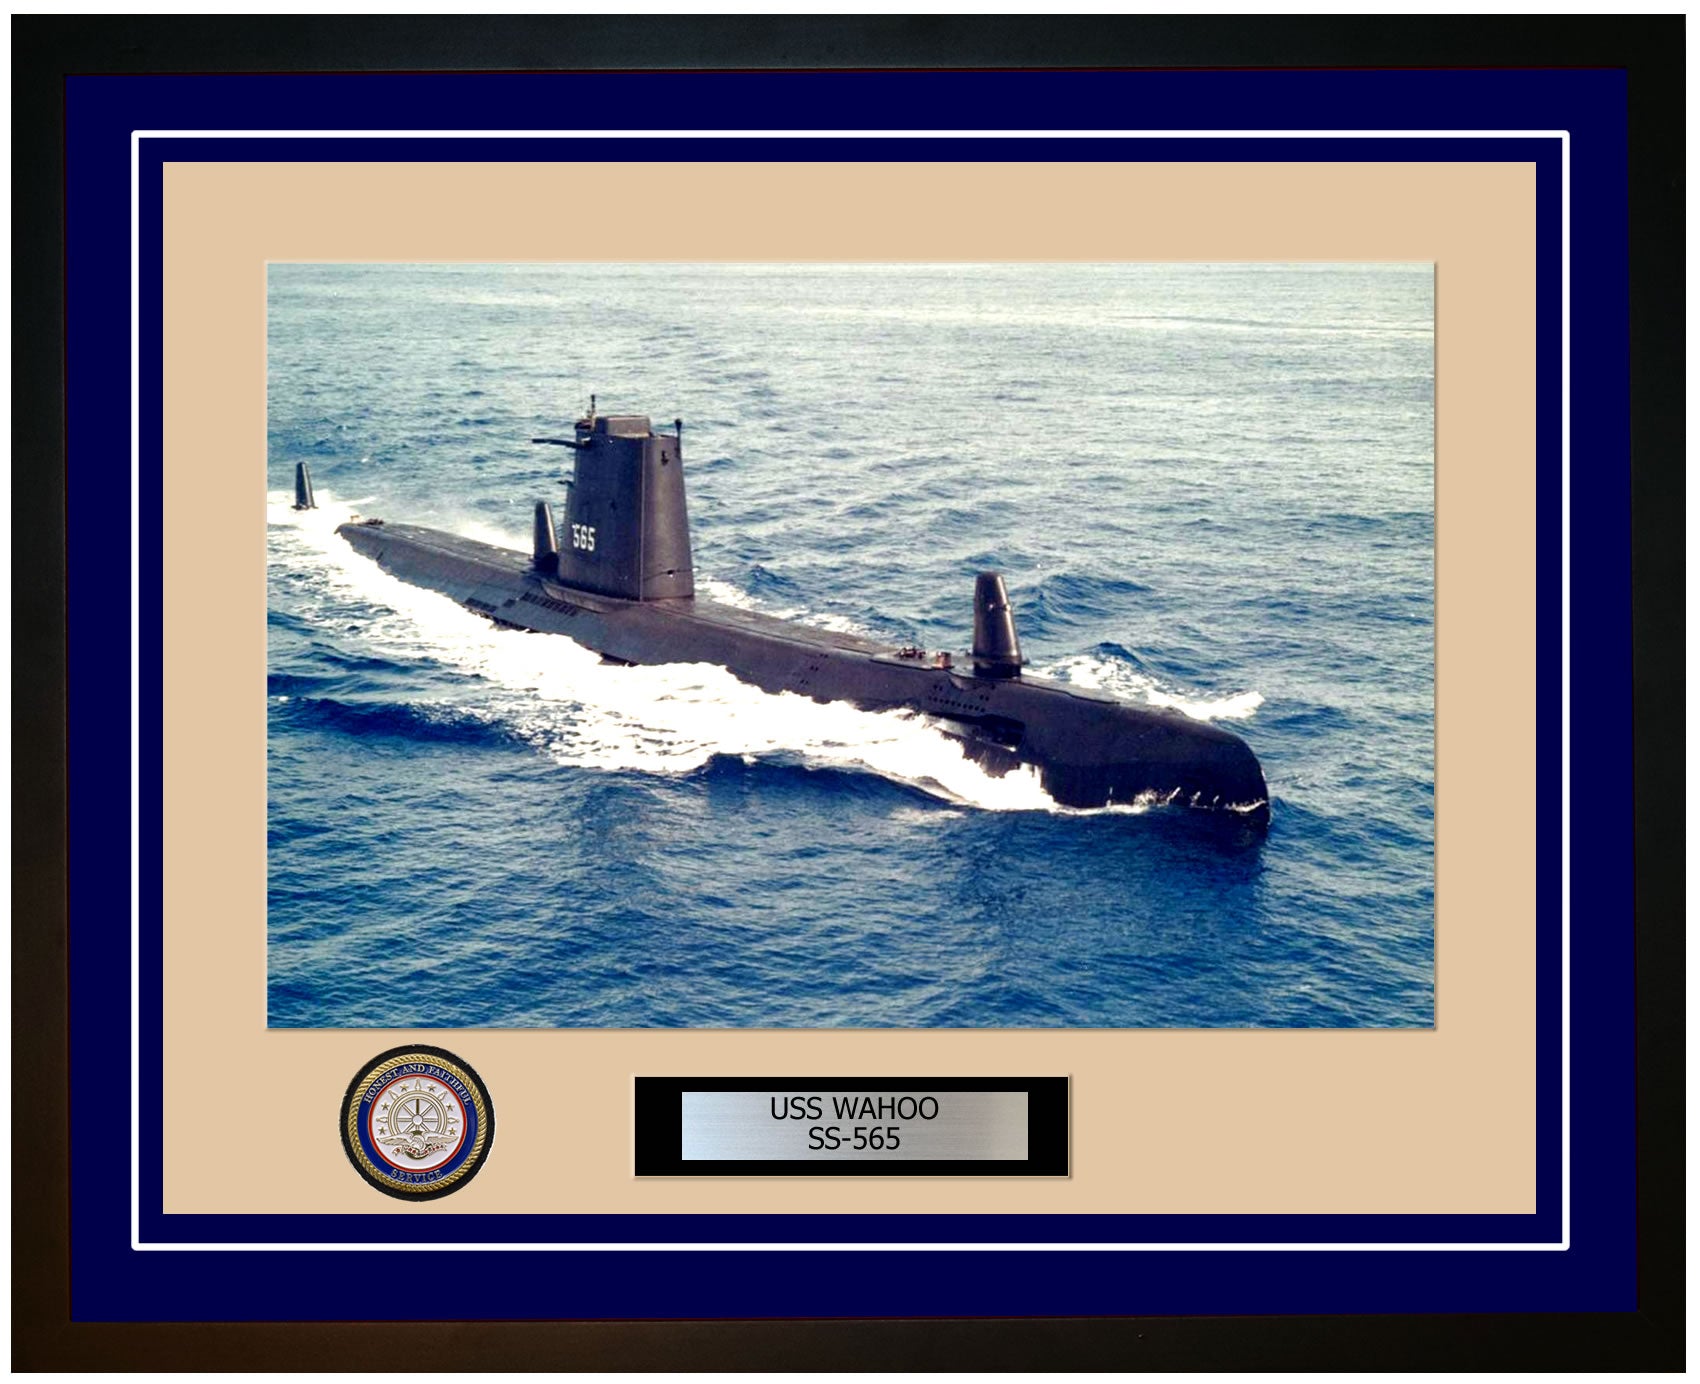 USS Wahoo SS-565 Framed Navy Ship Photo Blue